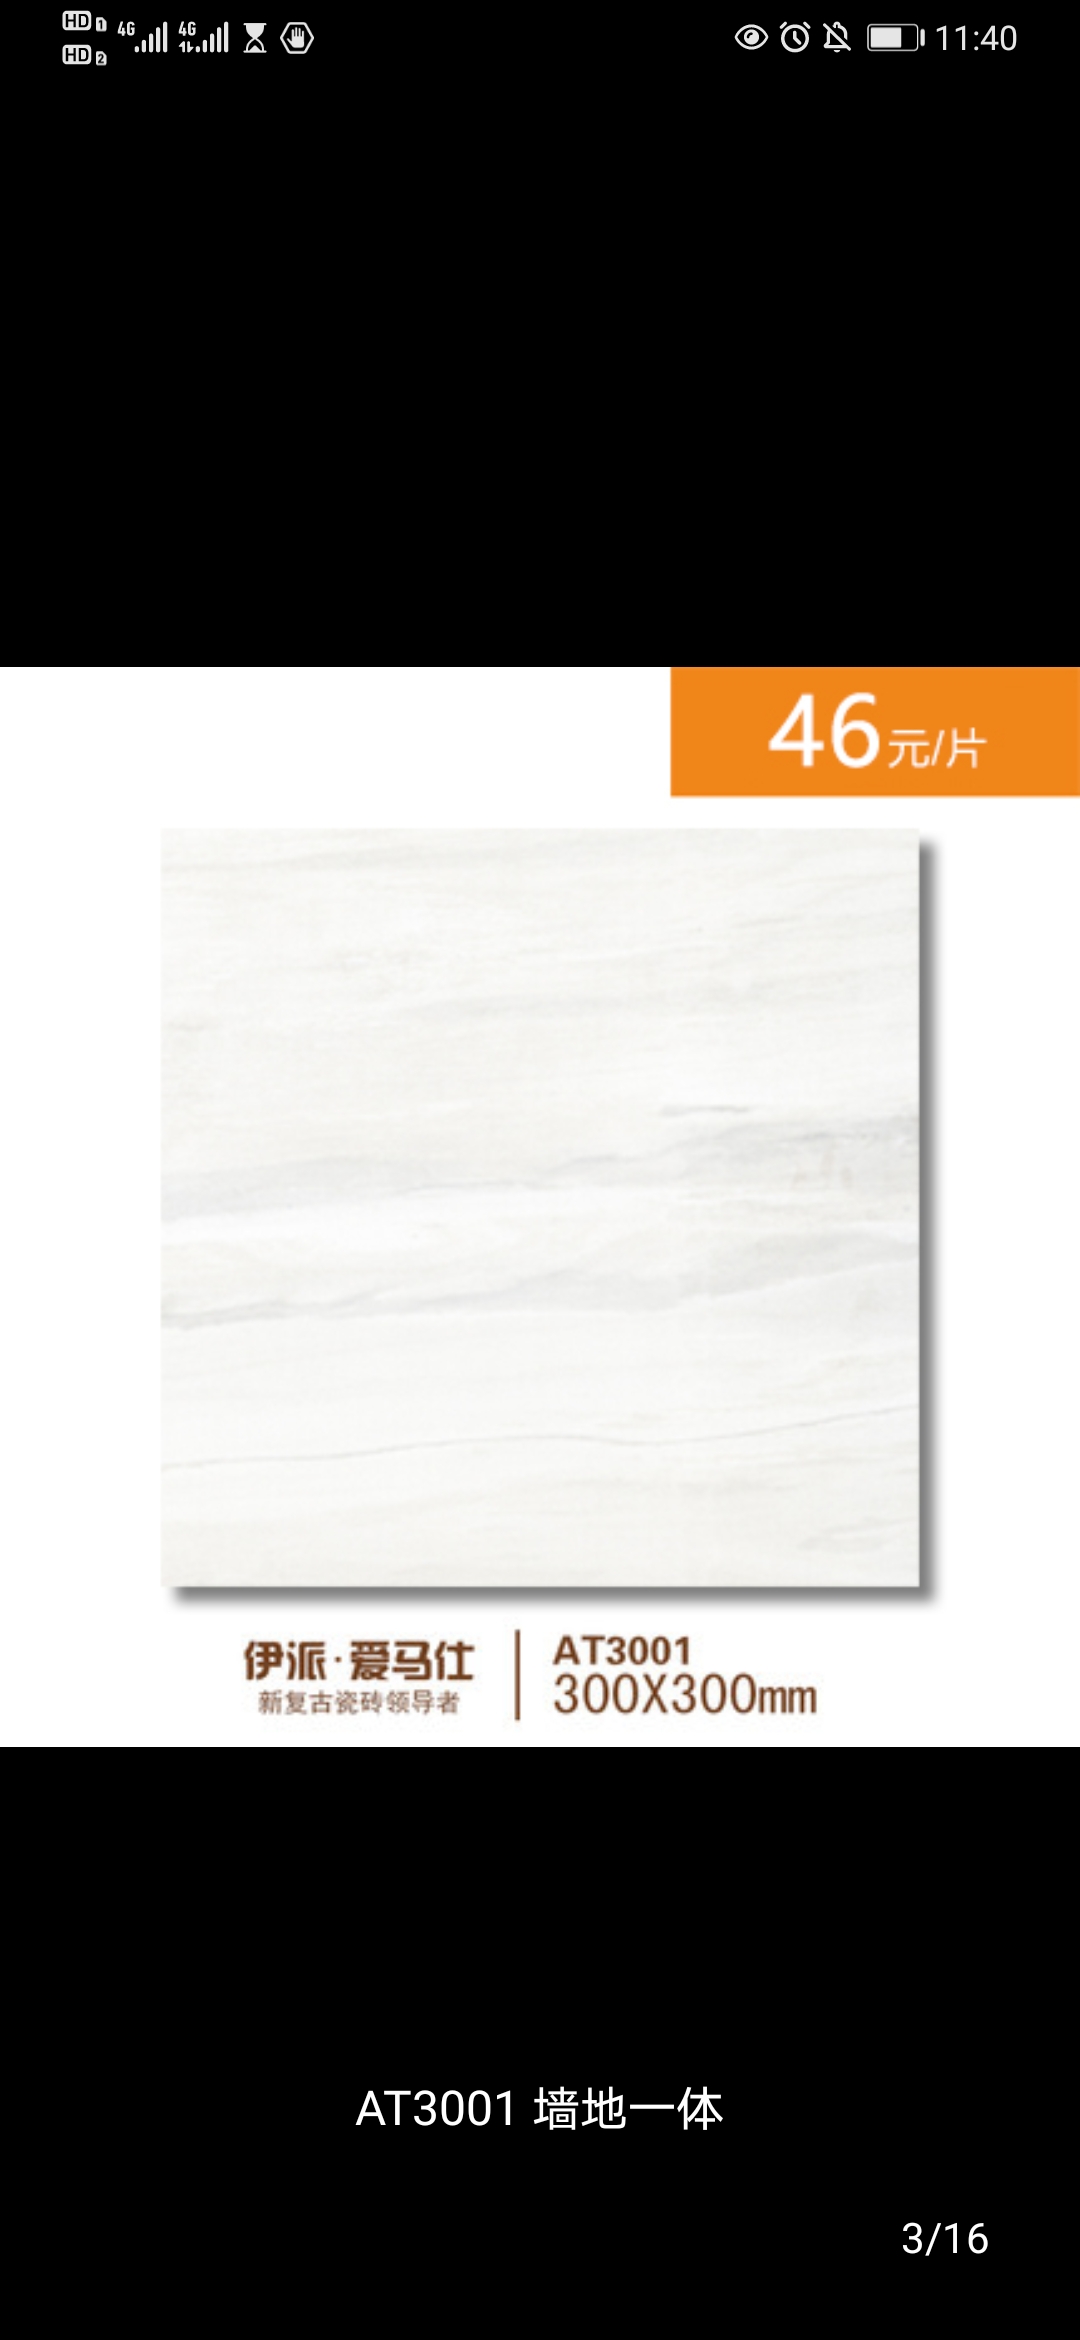 伊派瓷砖埃森尼迪AT 墙地砖 客厅厨房卫生间欧式AT3001产品图